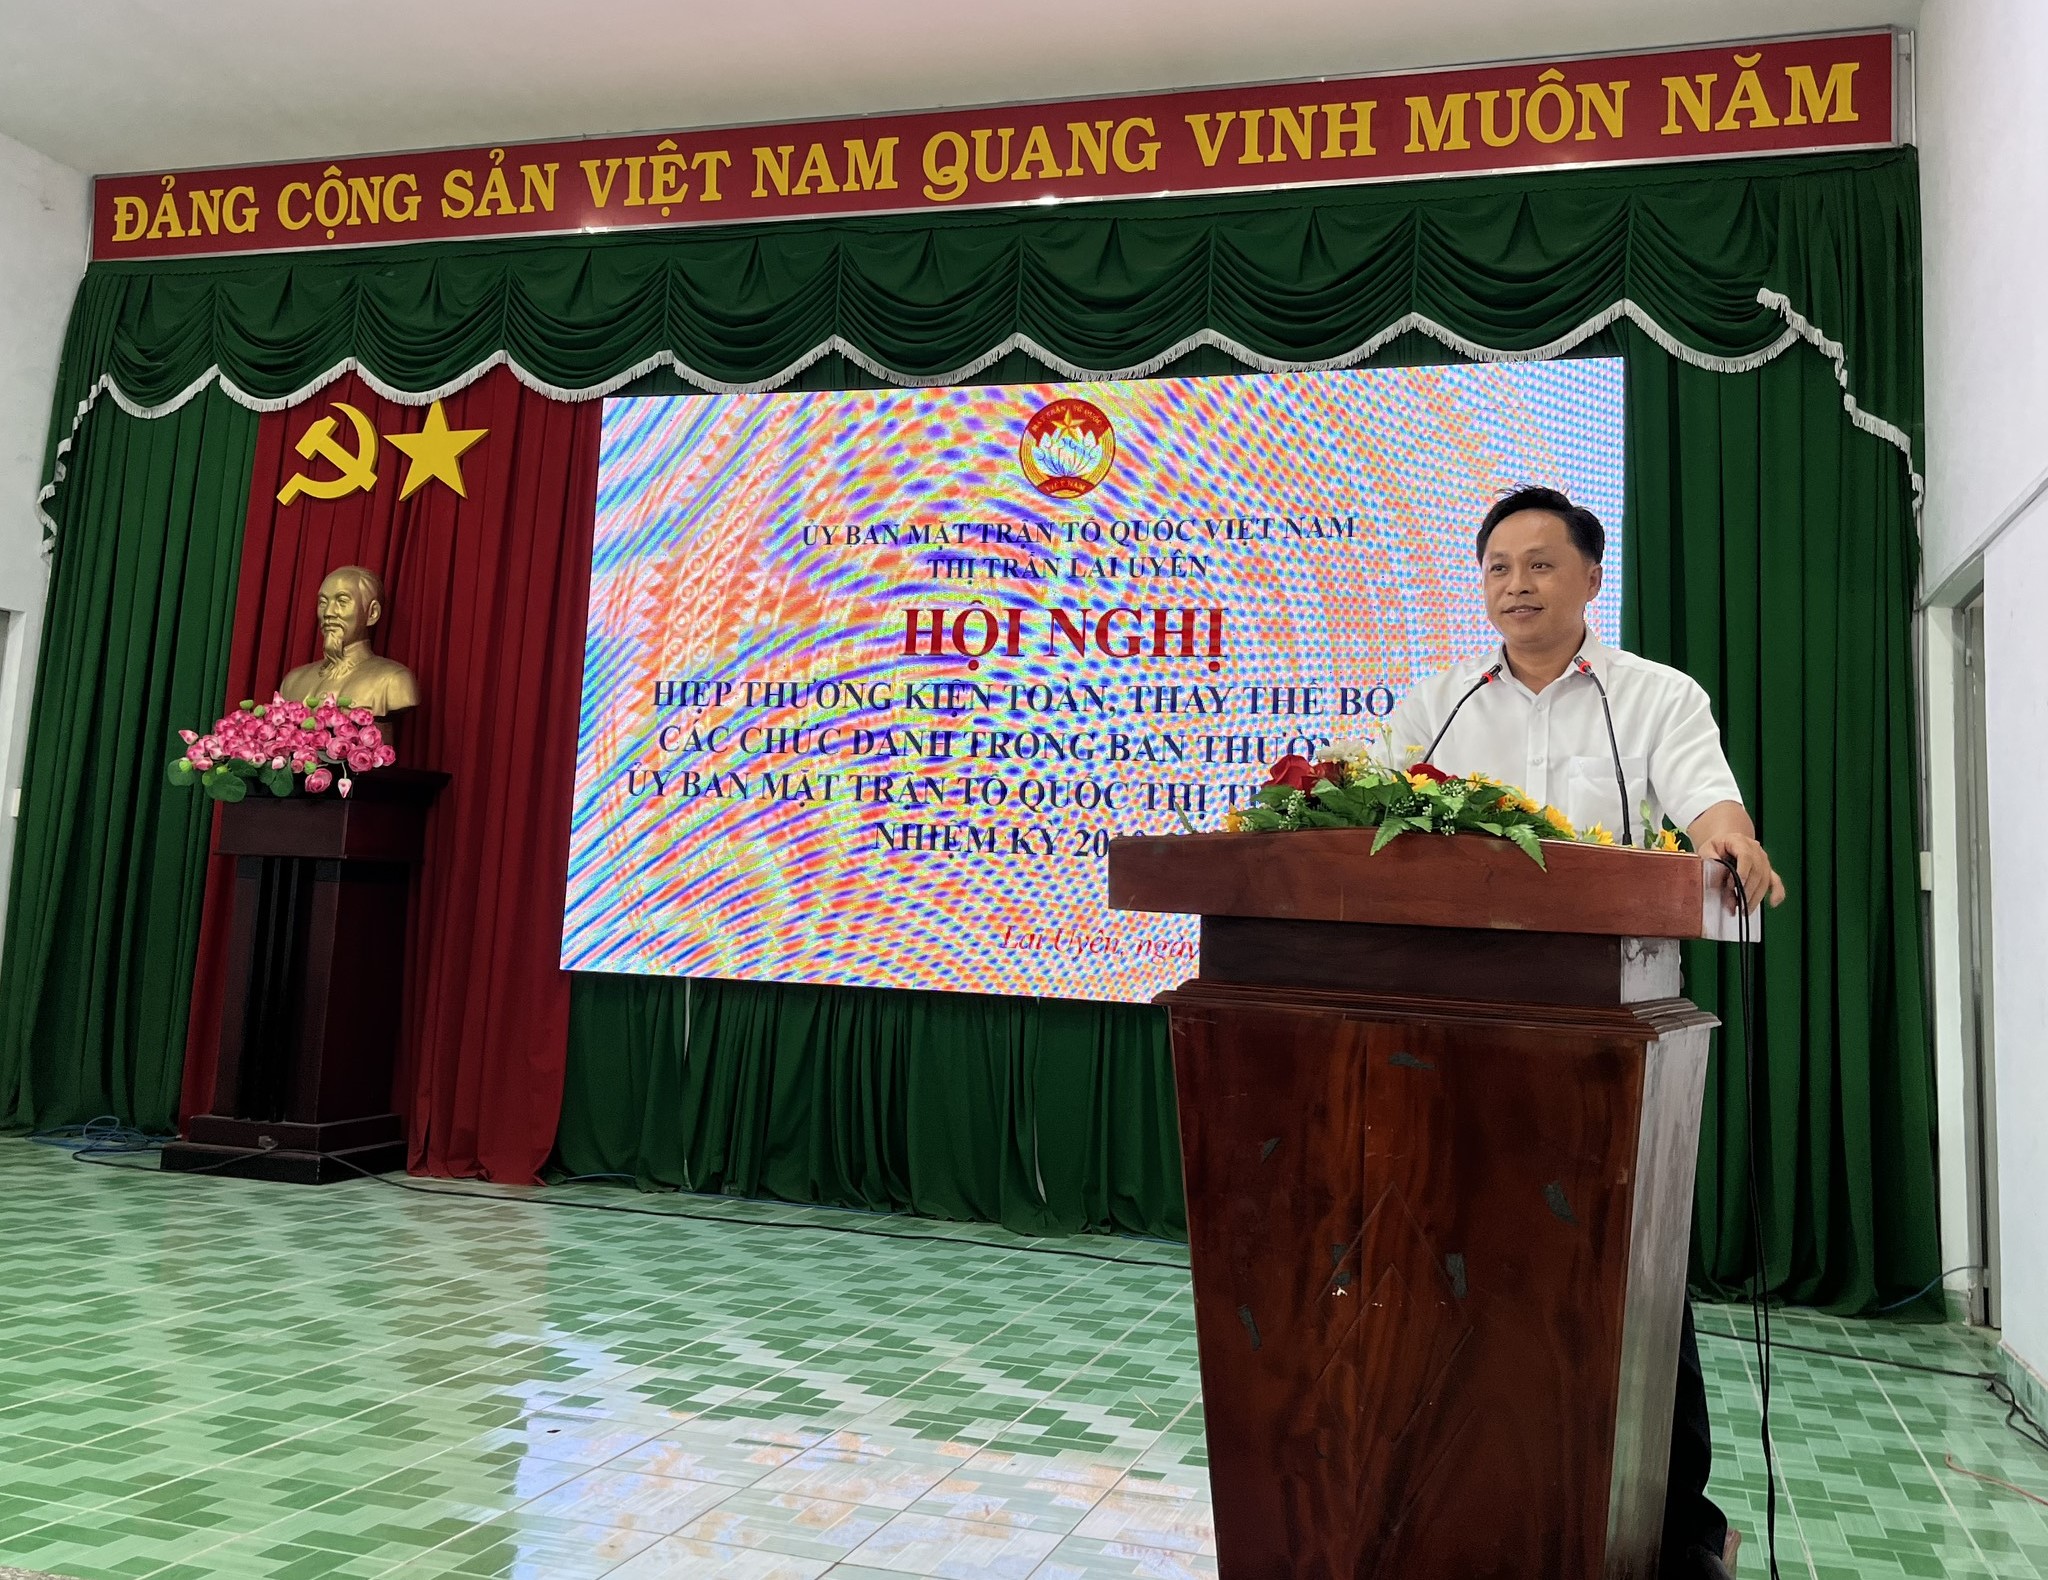 Hiệp thương bầu chức danh Chủ tịch Ủy ban Mặt trận Tổ quốc Việt Nam thị trấn Lai Uyên, nhiệm kỳ 2019 – 2024